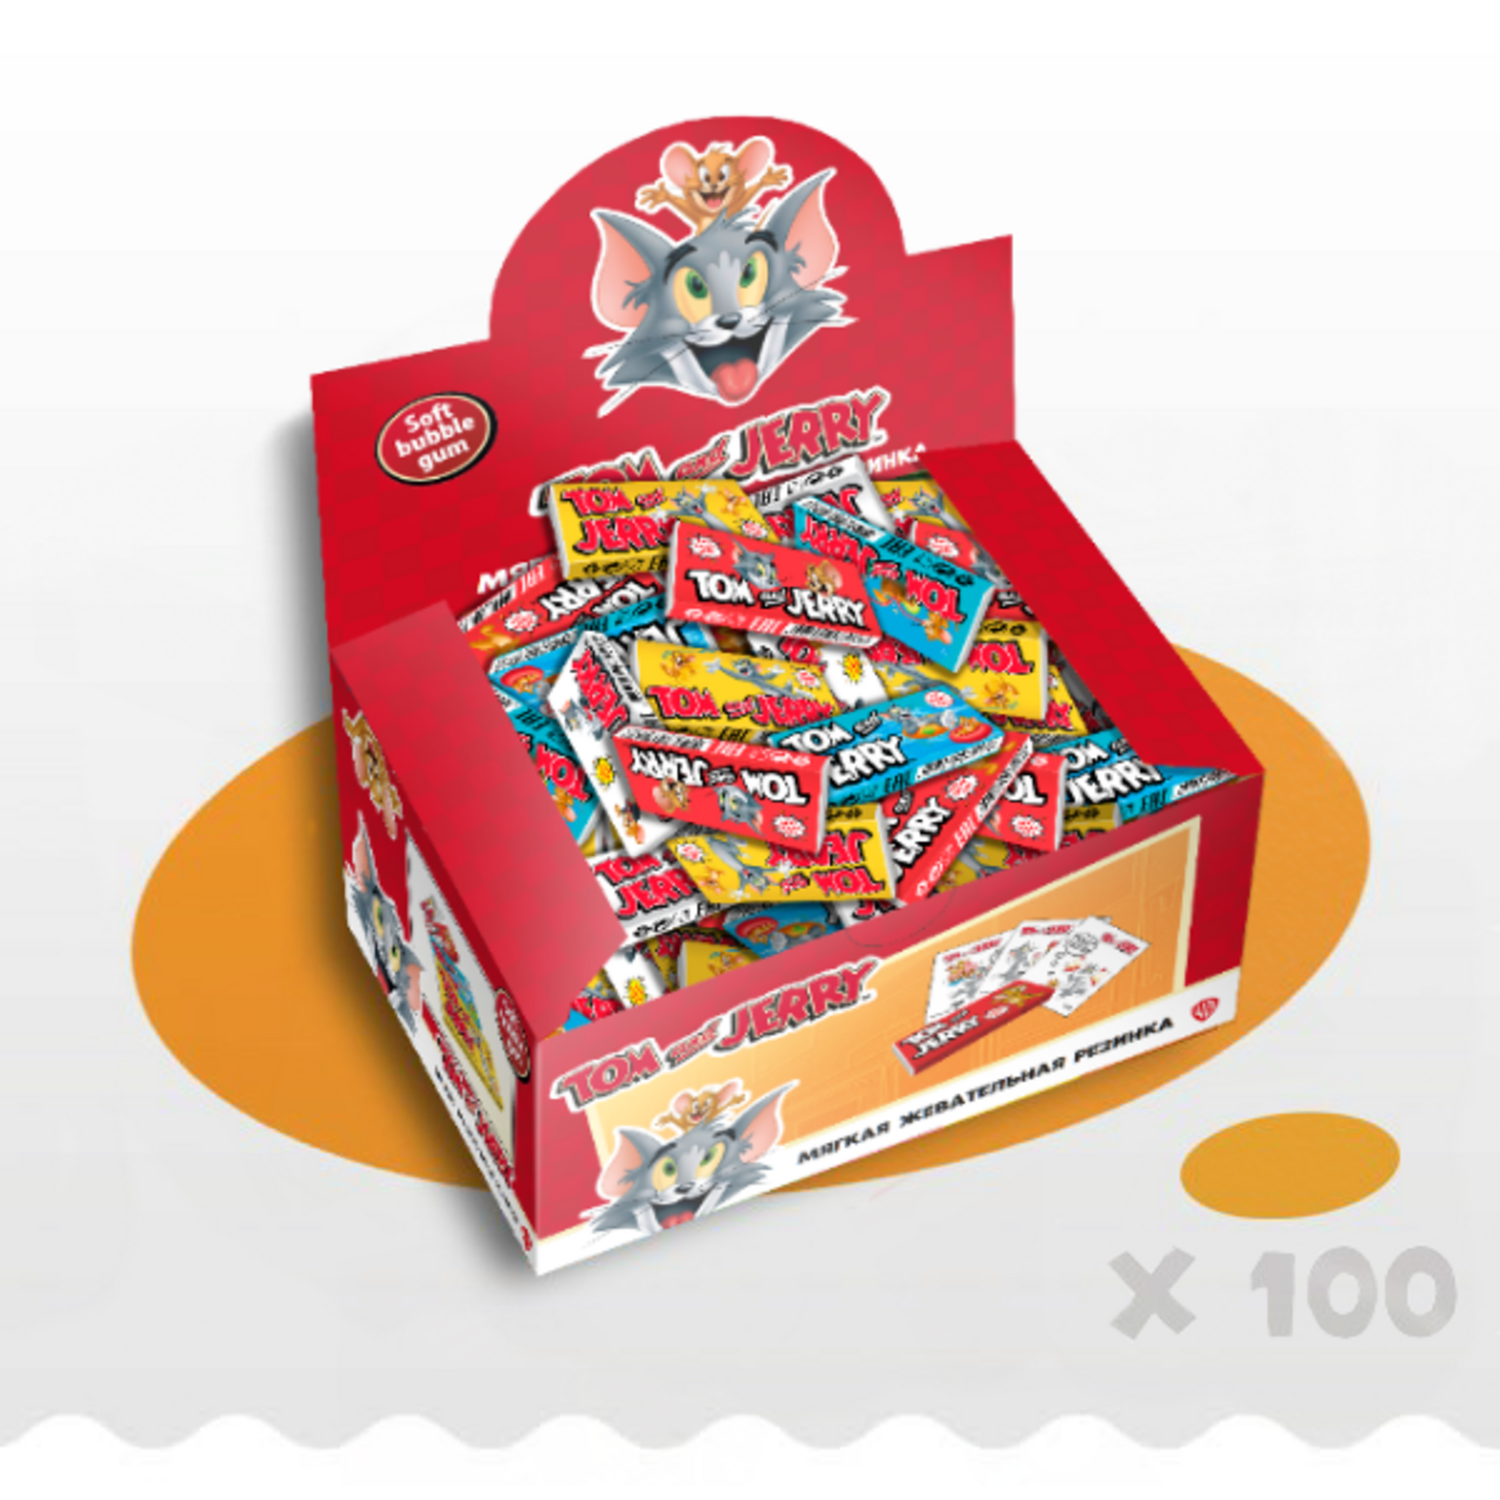 Жевательная резинка Tom and Jerry (WB) набор подарочный ассорти микс вкусов 200шт - фото 1